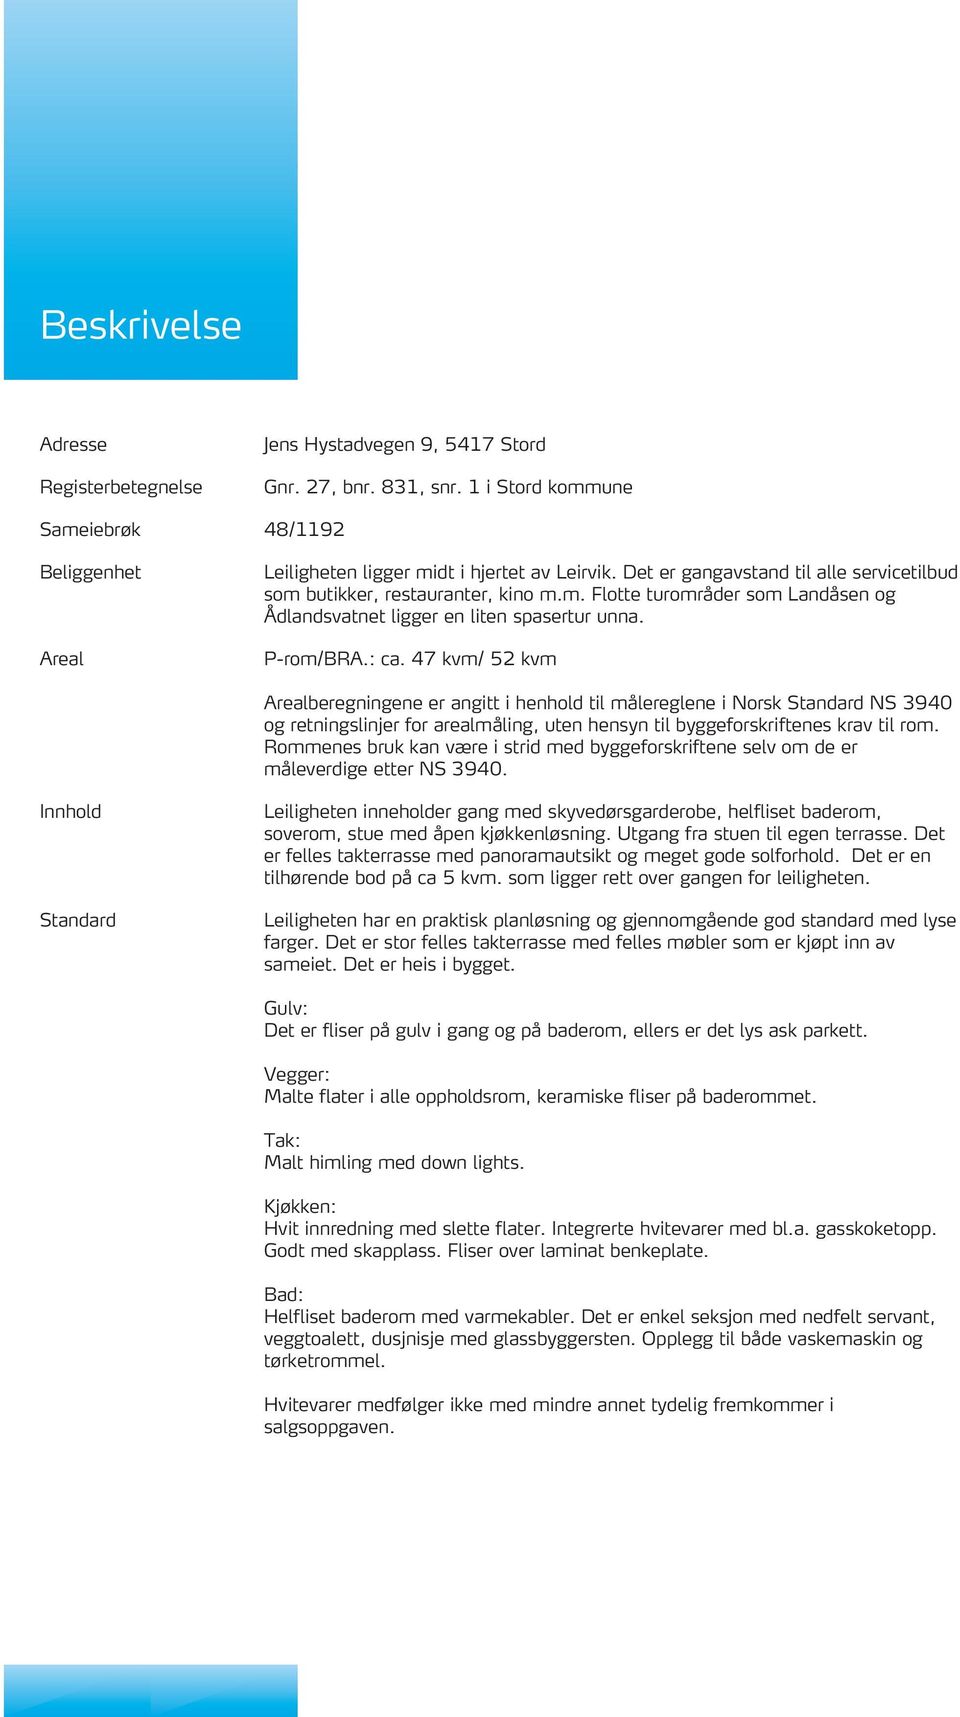 47 kvm/ 52 kvm Arealberegningene er angitt i henhold til målereglene i Norsk Standard NS 3940 og retningslinjer for arealmåling, uten hensyn til byggeforskriftenes krav til rom.